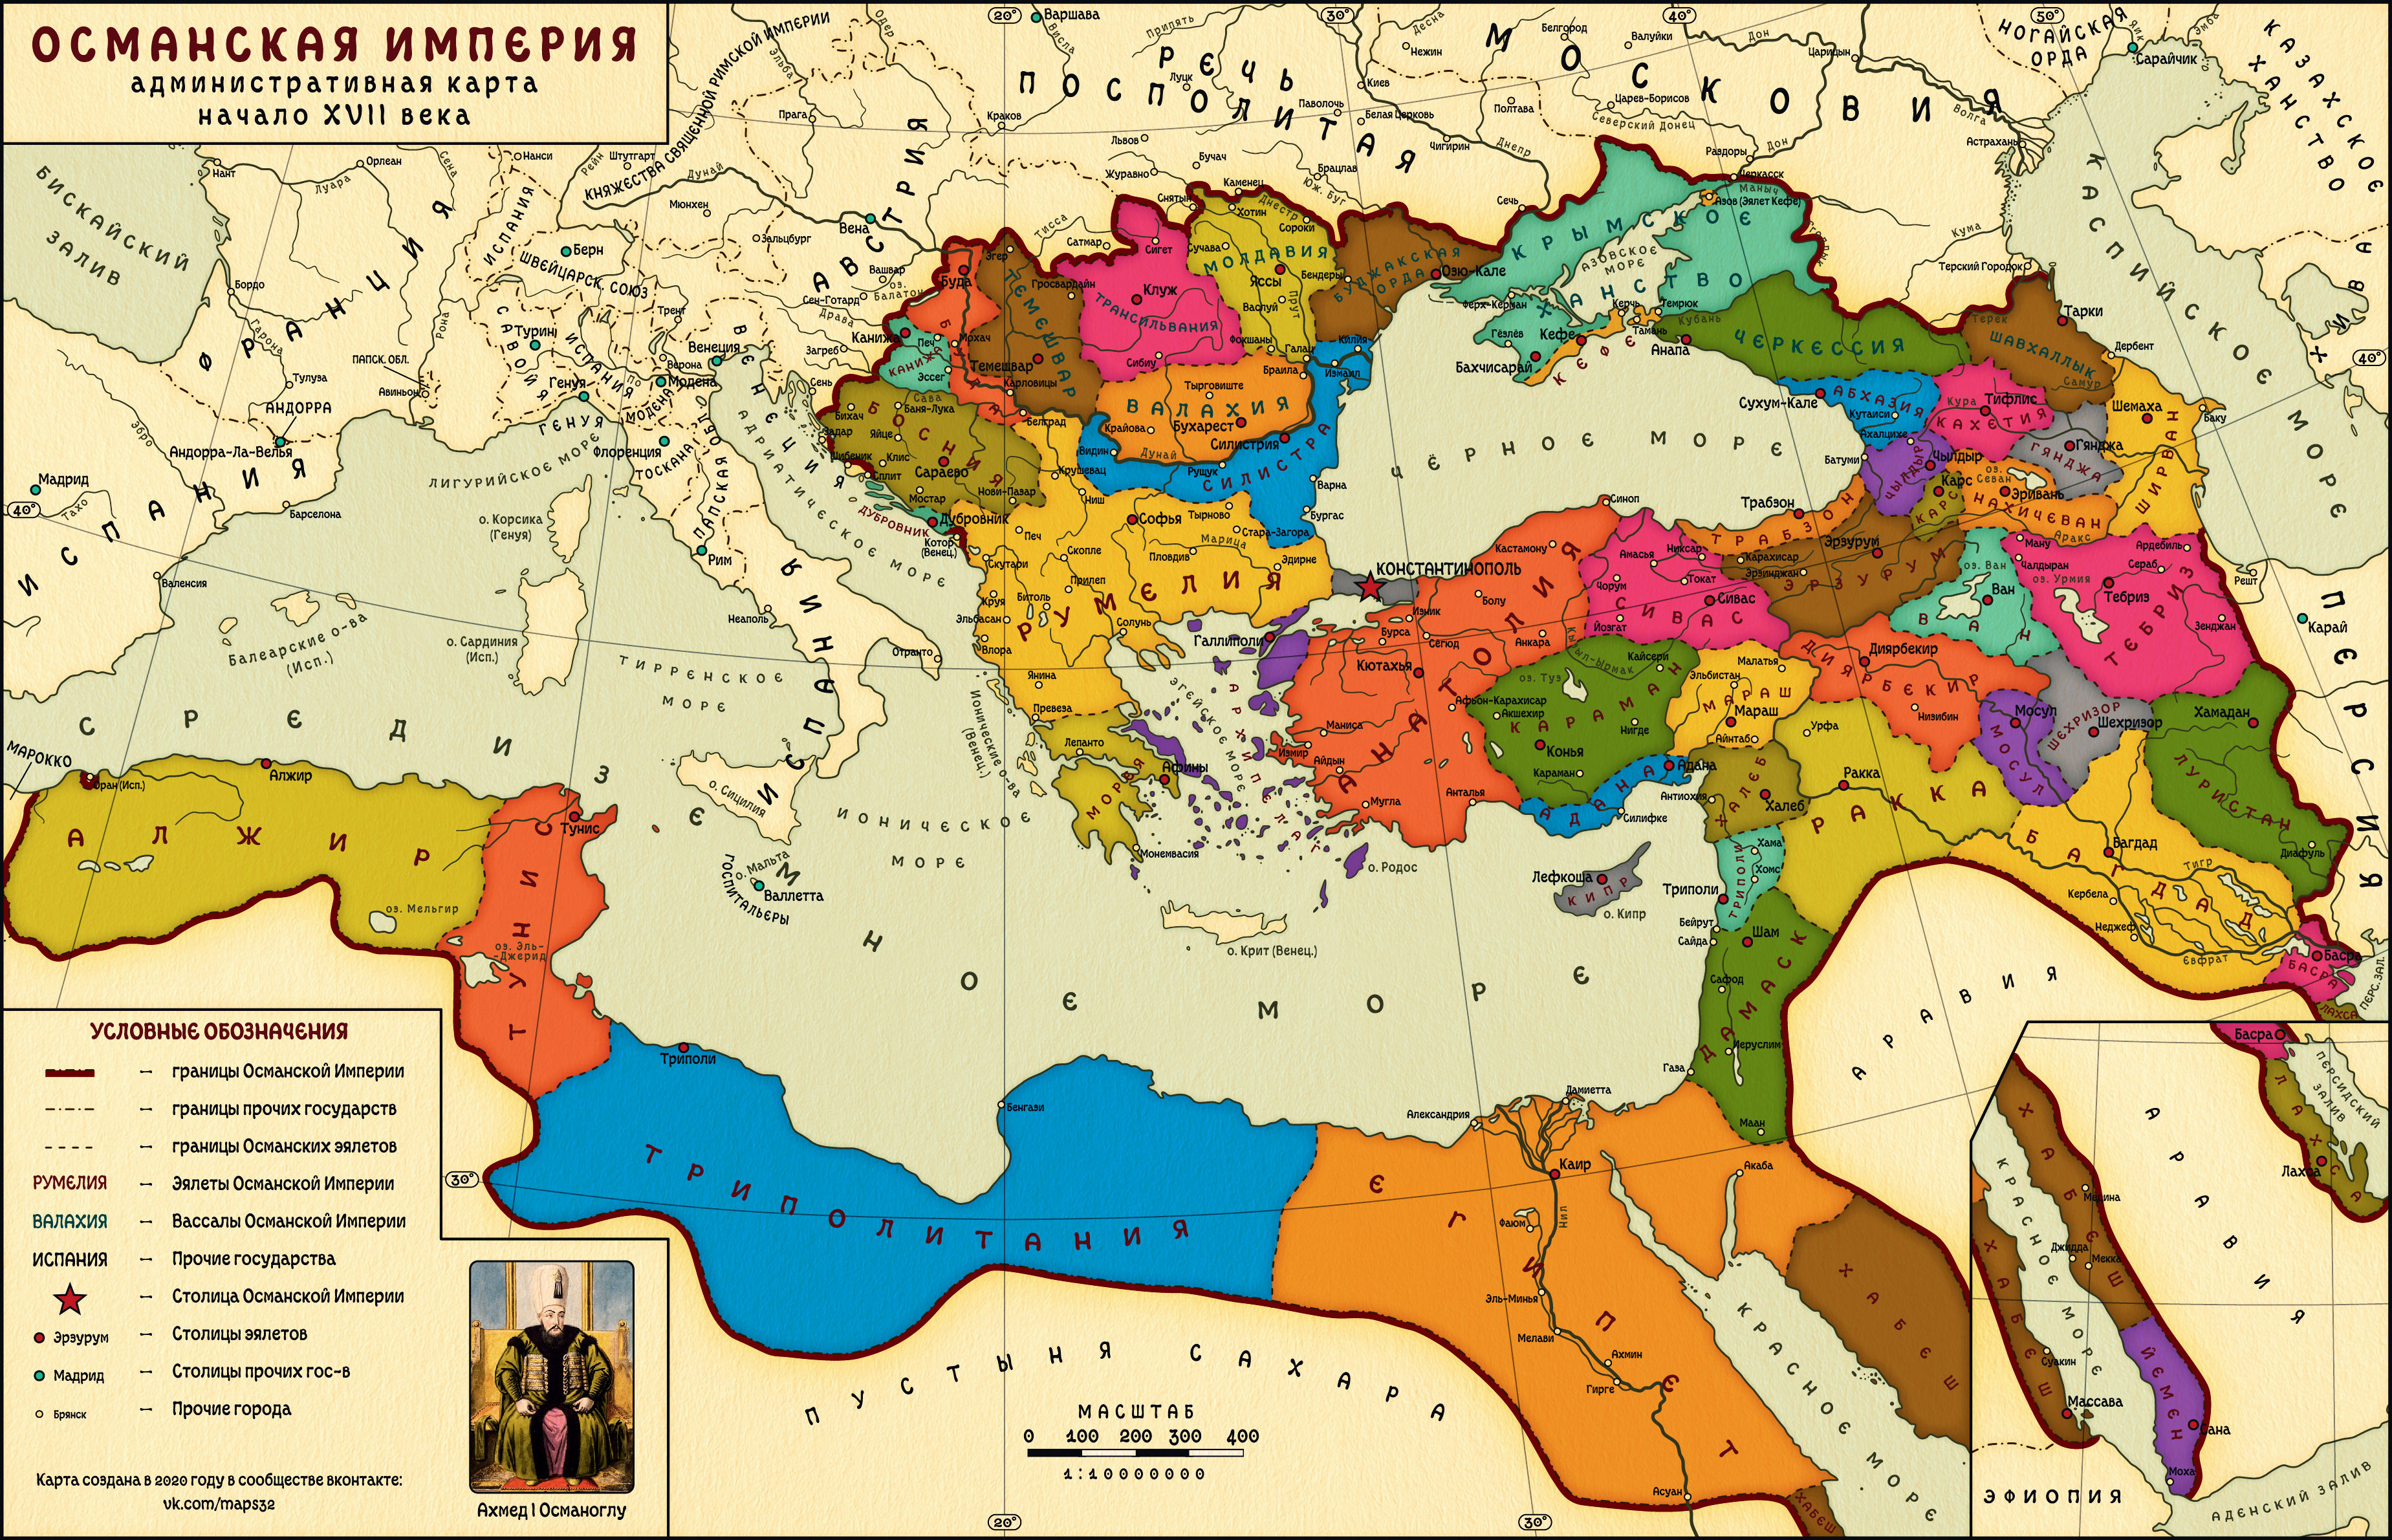 Какая была политика османской империи. Османская Империя в расцвете карта. Карта Османской империи на пике могущества. Карта Турции Османской империи. Османская Империя и Персия в 18 веке карта.